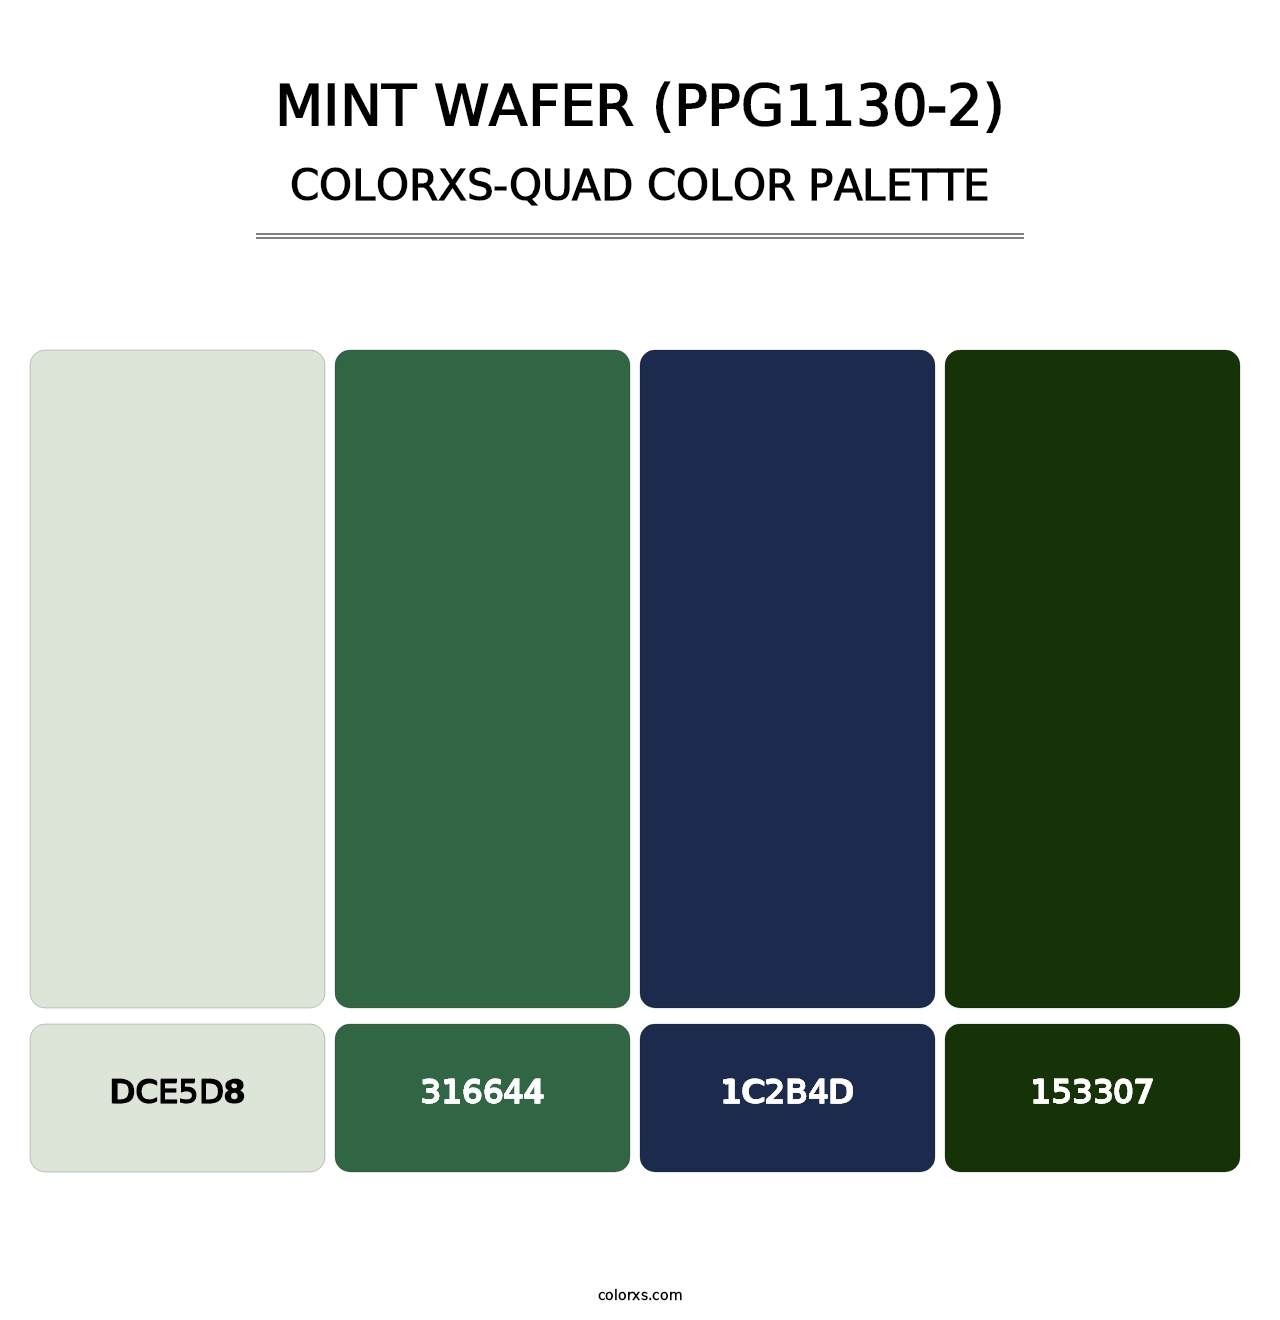 Mint Wafer (PPG1130-2) - Colorxs Quad Palette